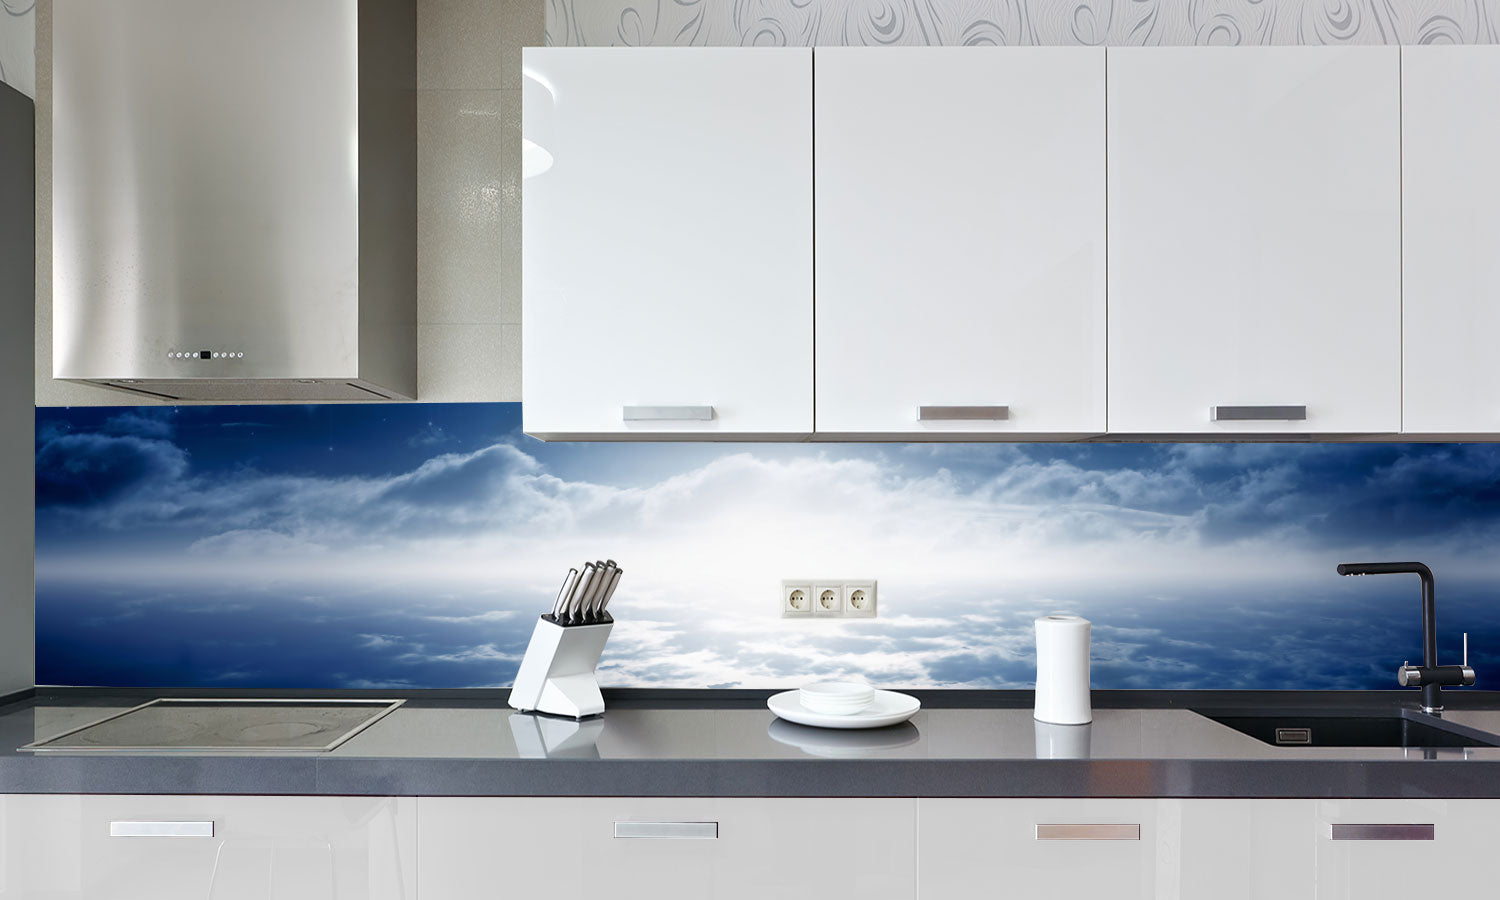 Kuhinjski paneli Beautiful night - Stekleni / PVC plošče / Pleksi steklo - s tiskom za kuhinjo, Stenske obloge PKU0258 - Life-decor.si